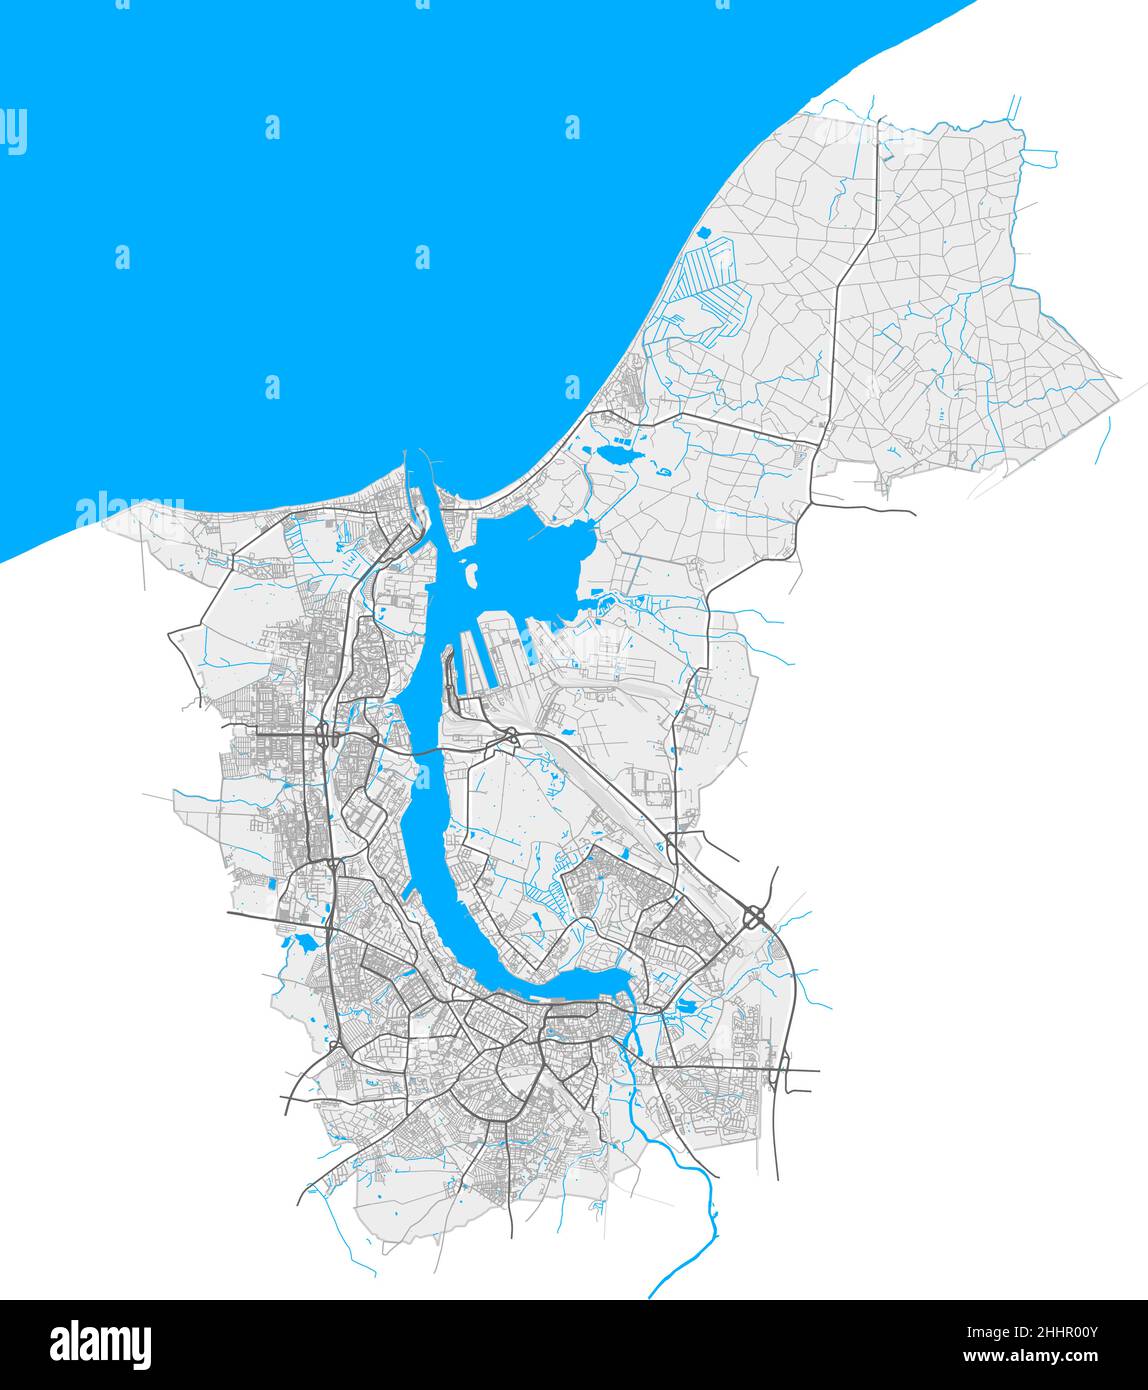 Rostock, Mecklenburg-Vorpommern, Deutschland hochauflösende Vektorkarte mit Stadtgrenzen und bearbeitbaren Pfaden. Weiße Umrisse für Hauptstraßen. Mann Stock Vektor